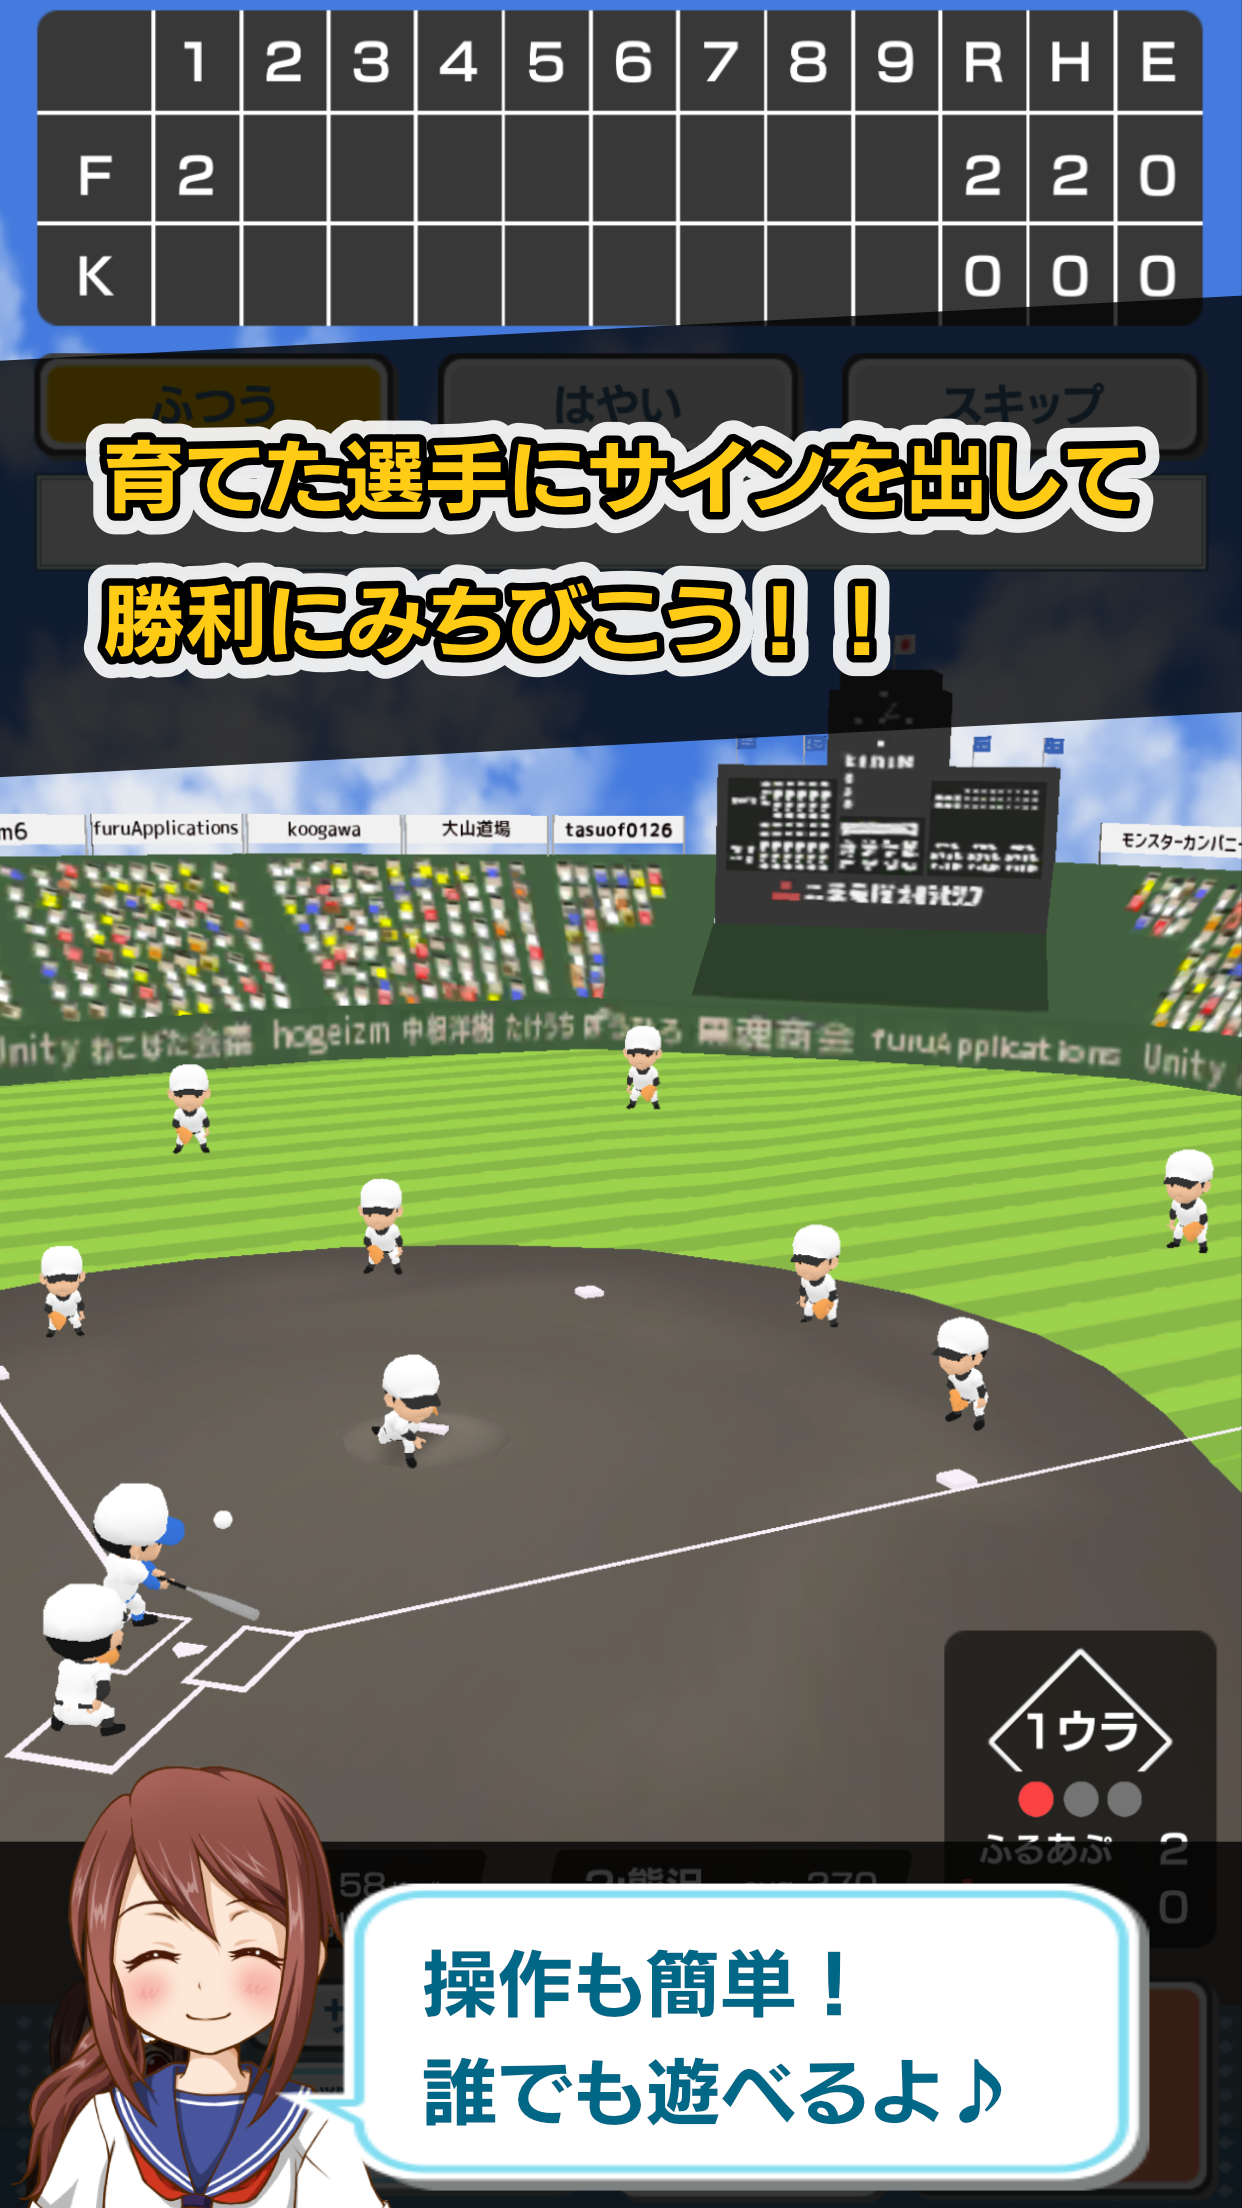 Screenshot 1 of Koshien - Besbol Sekolah Menengah 2.3.9